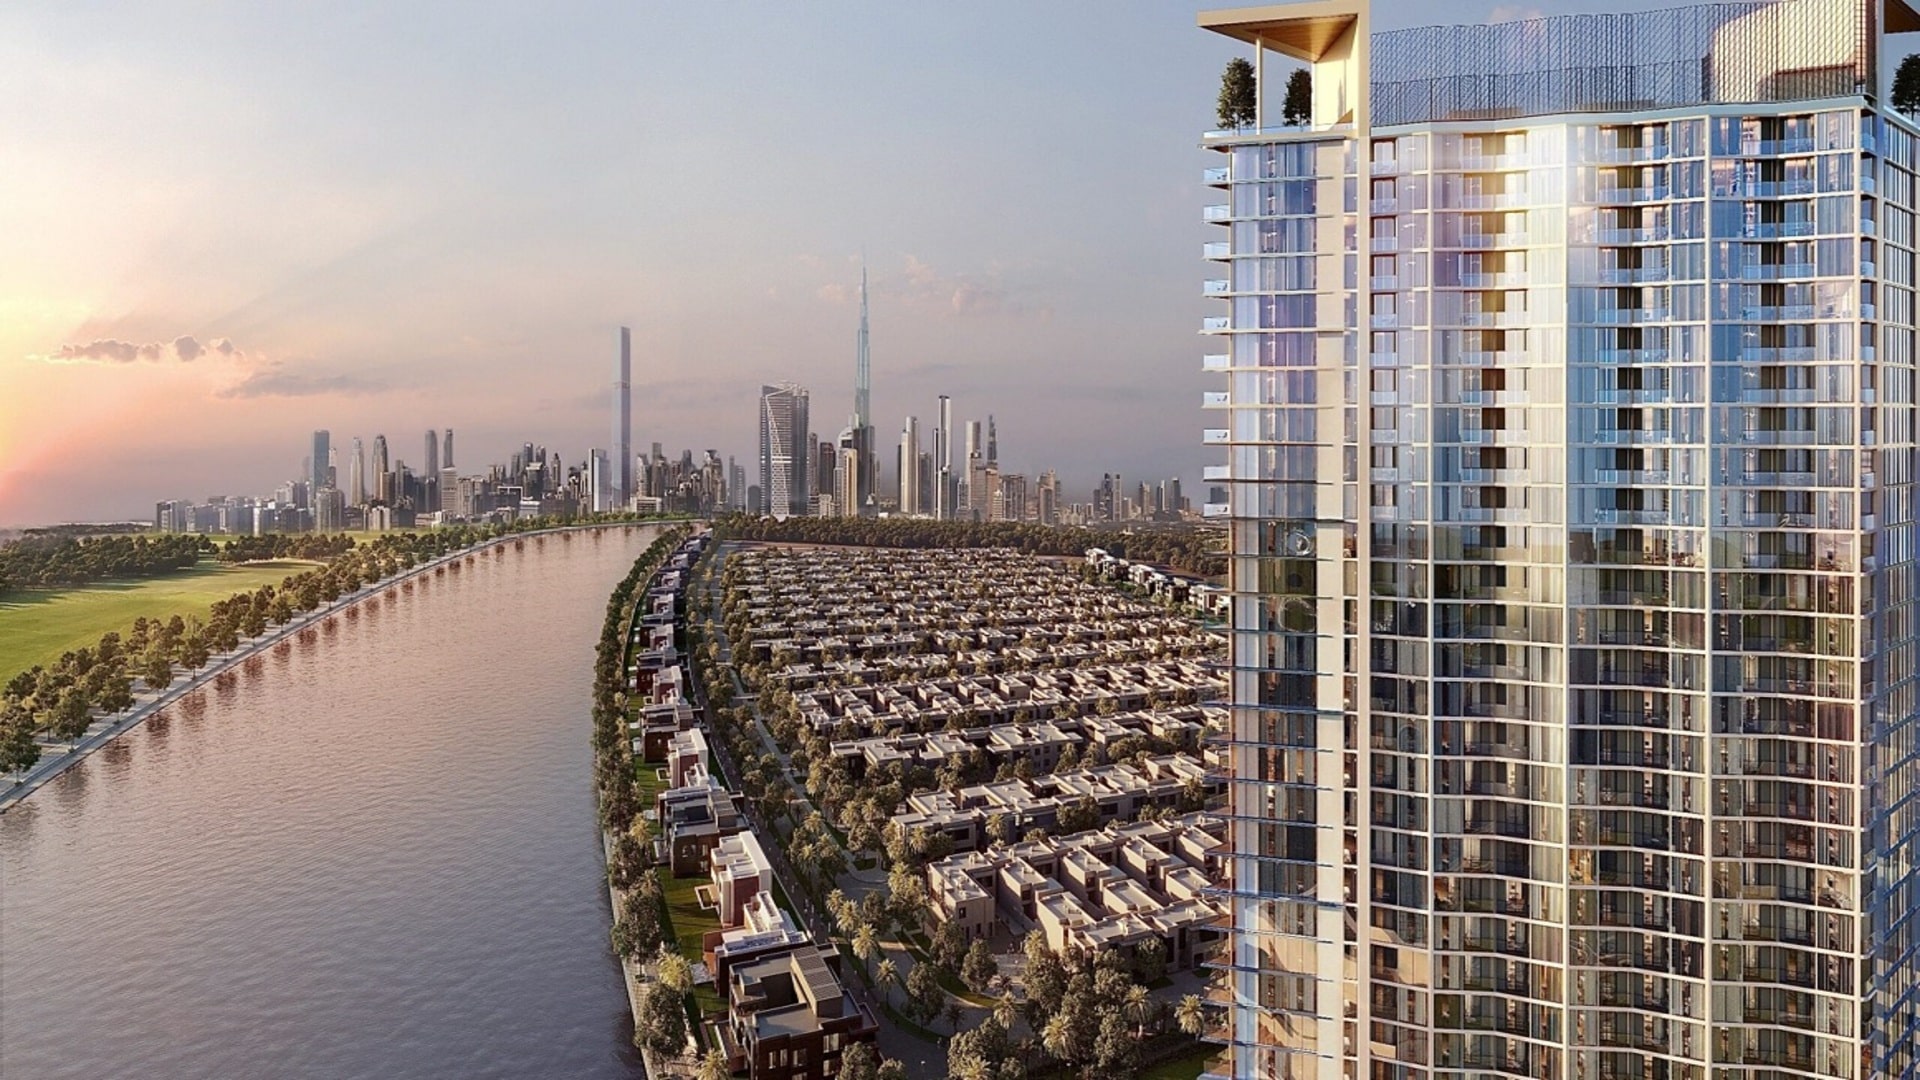 Sobha Hartland Heights Apartments - MBR City Dubai.